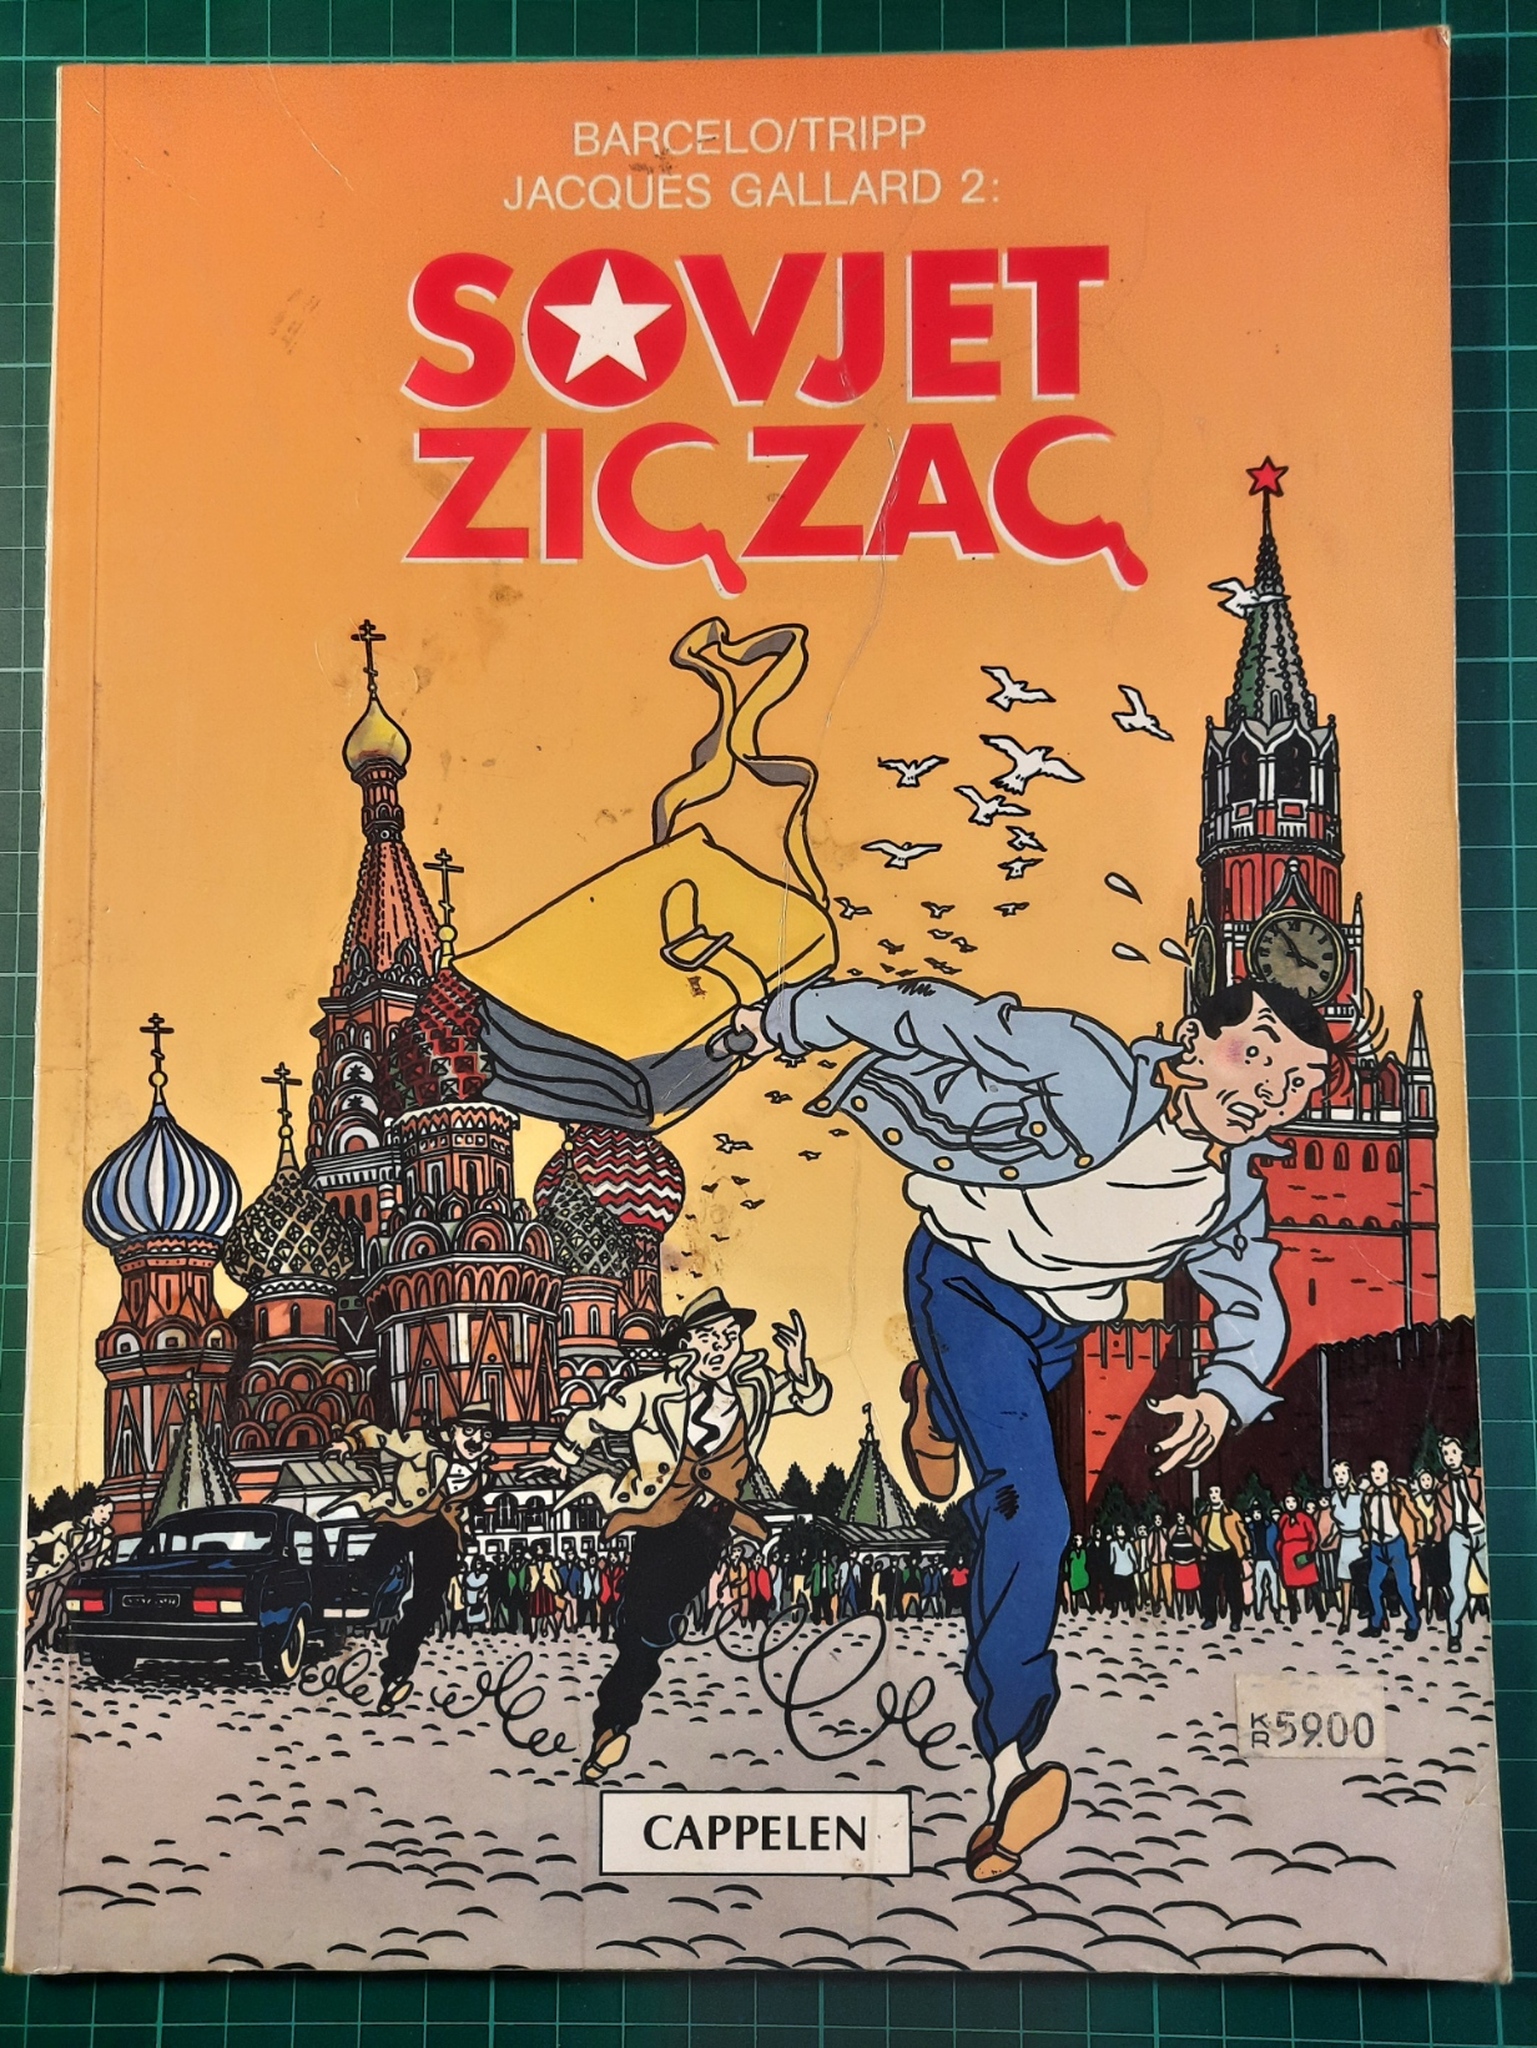 Sovjet Zig Zac